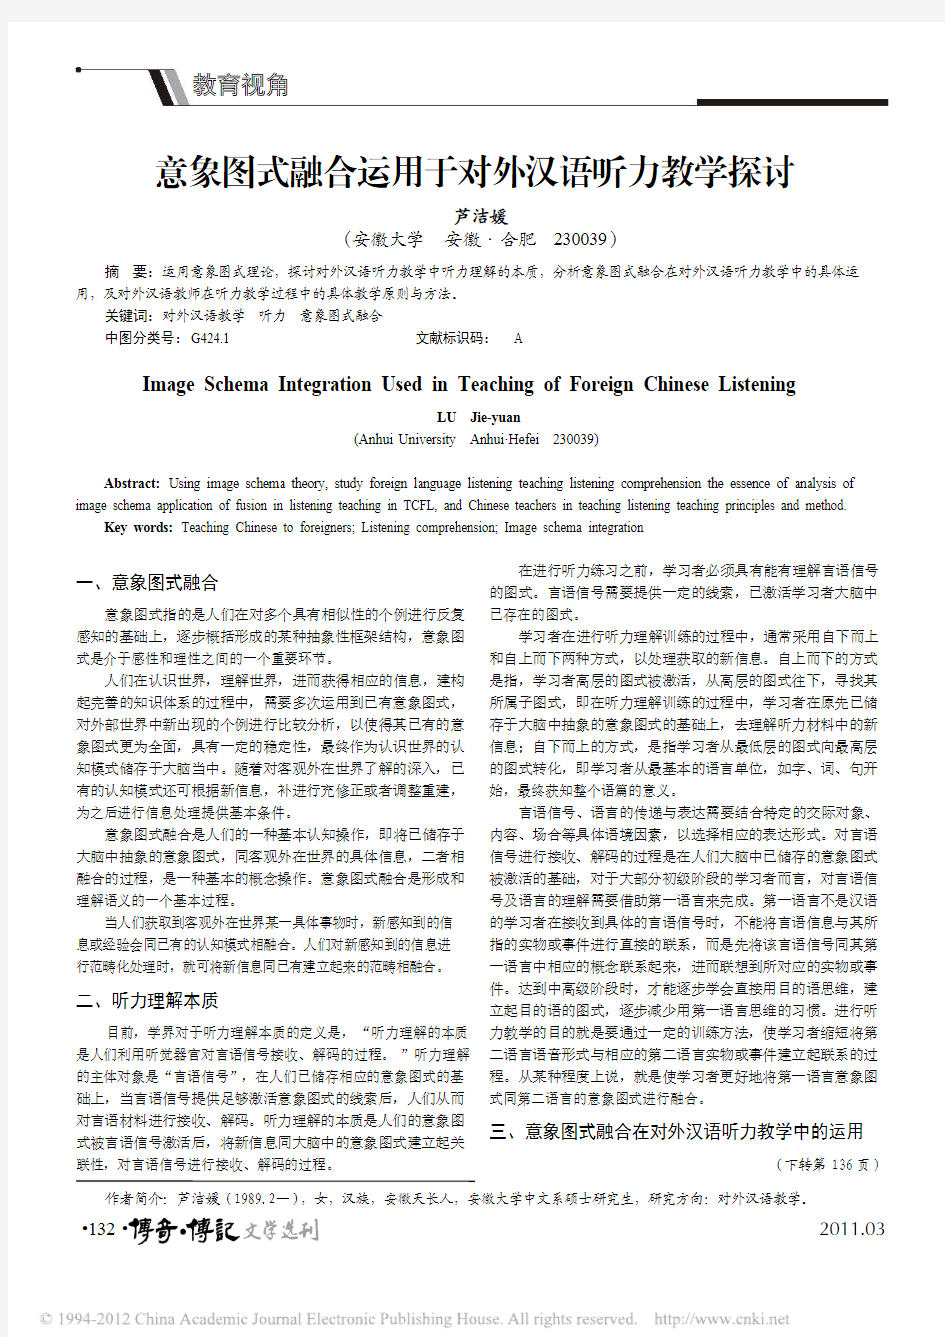 意象图式融合运用于对外汉语听力教学探讨_芦洁媛